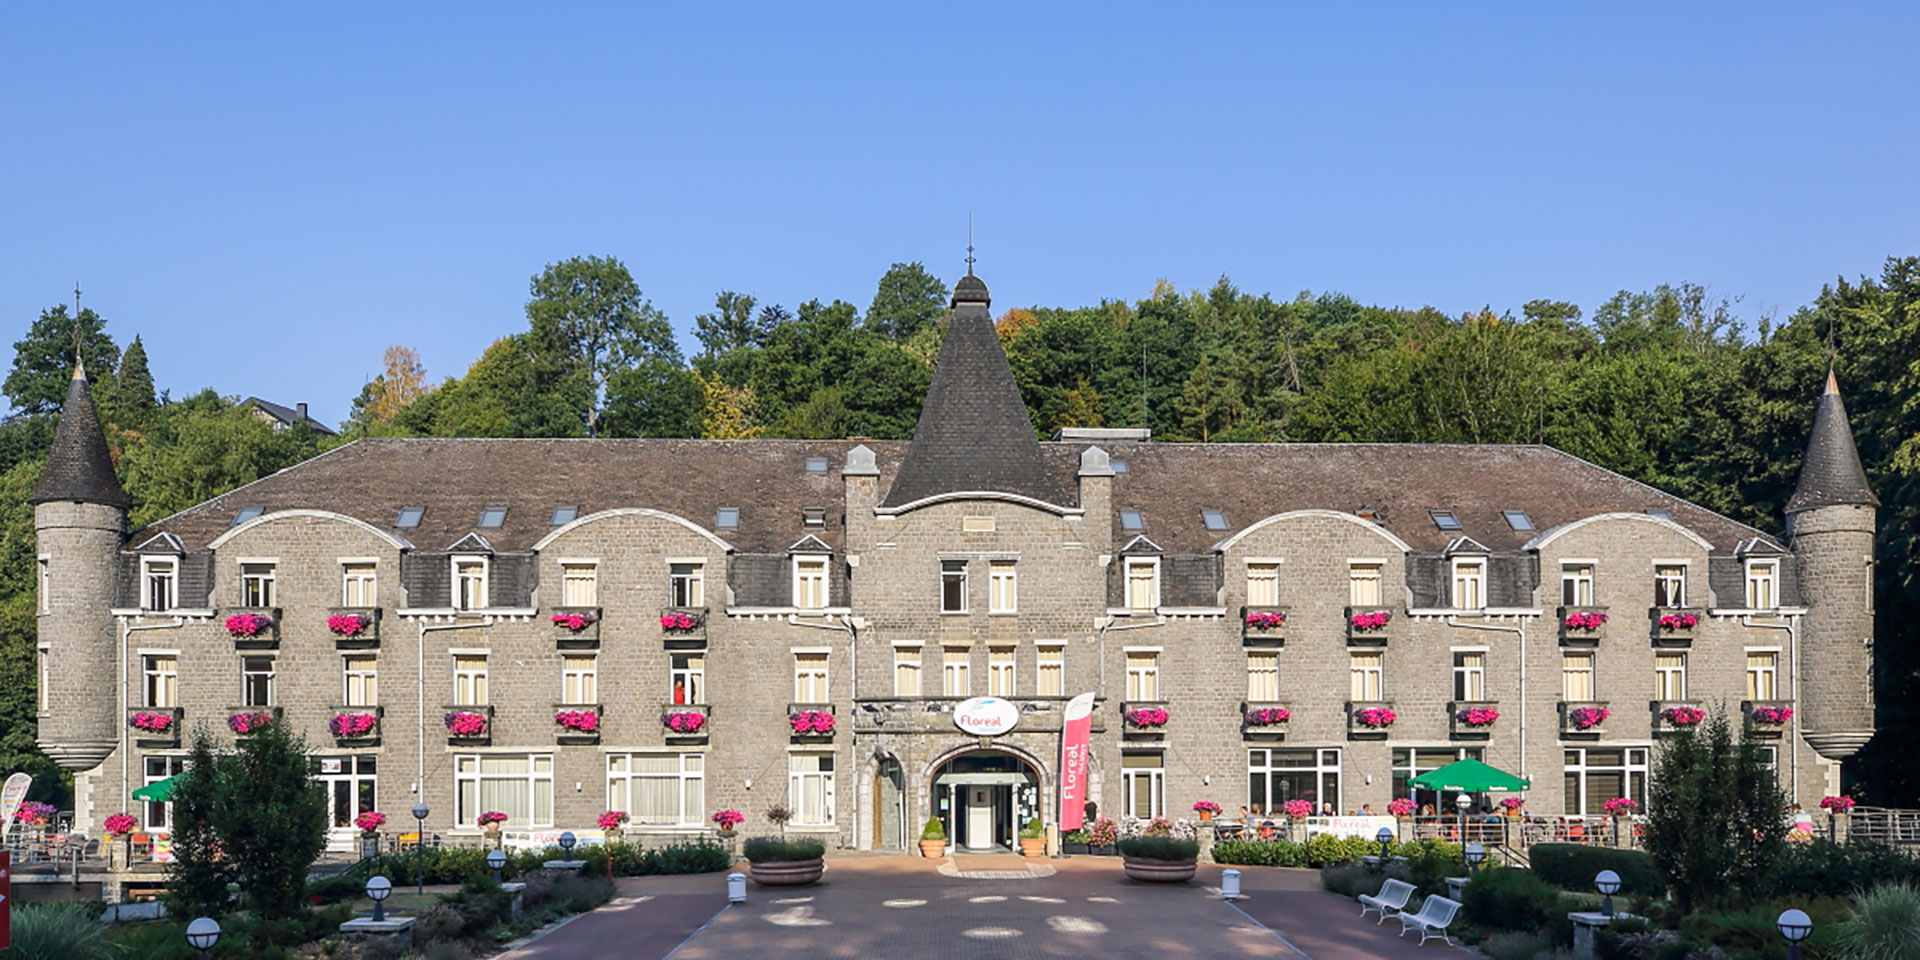 Floréal - La Roche-en-Ardenne - cadre vert - Ourthe - 76 chambres - 38 studios - restaurant gastronomique - Le Parc